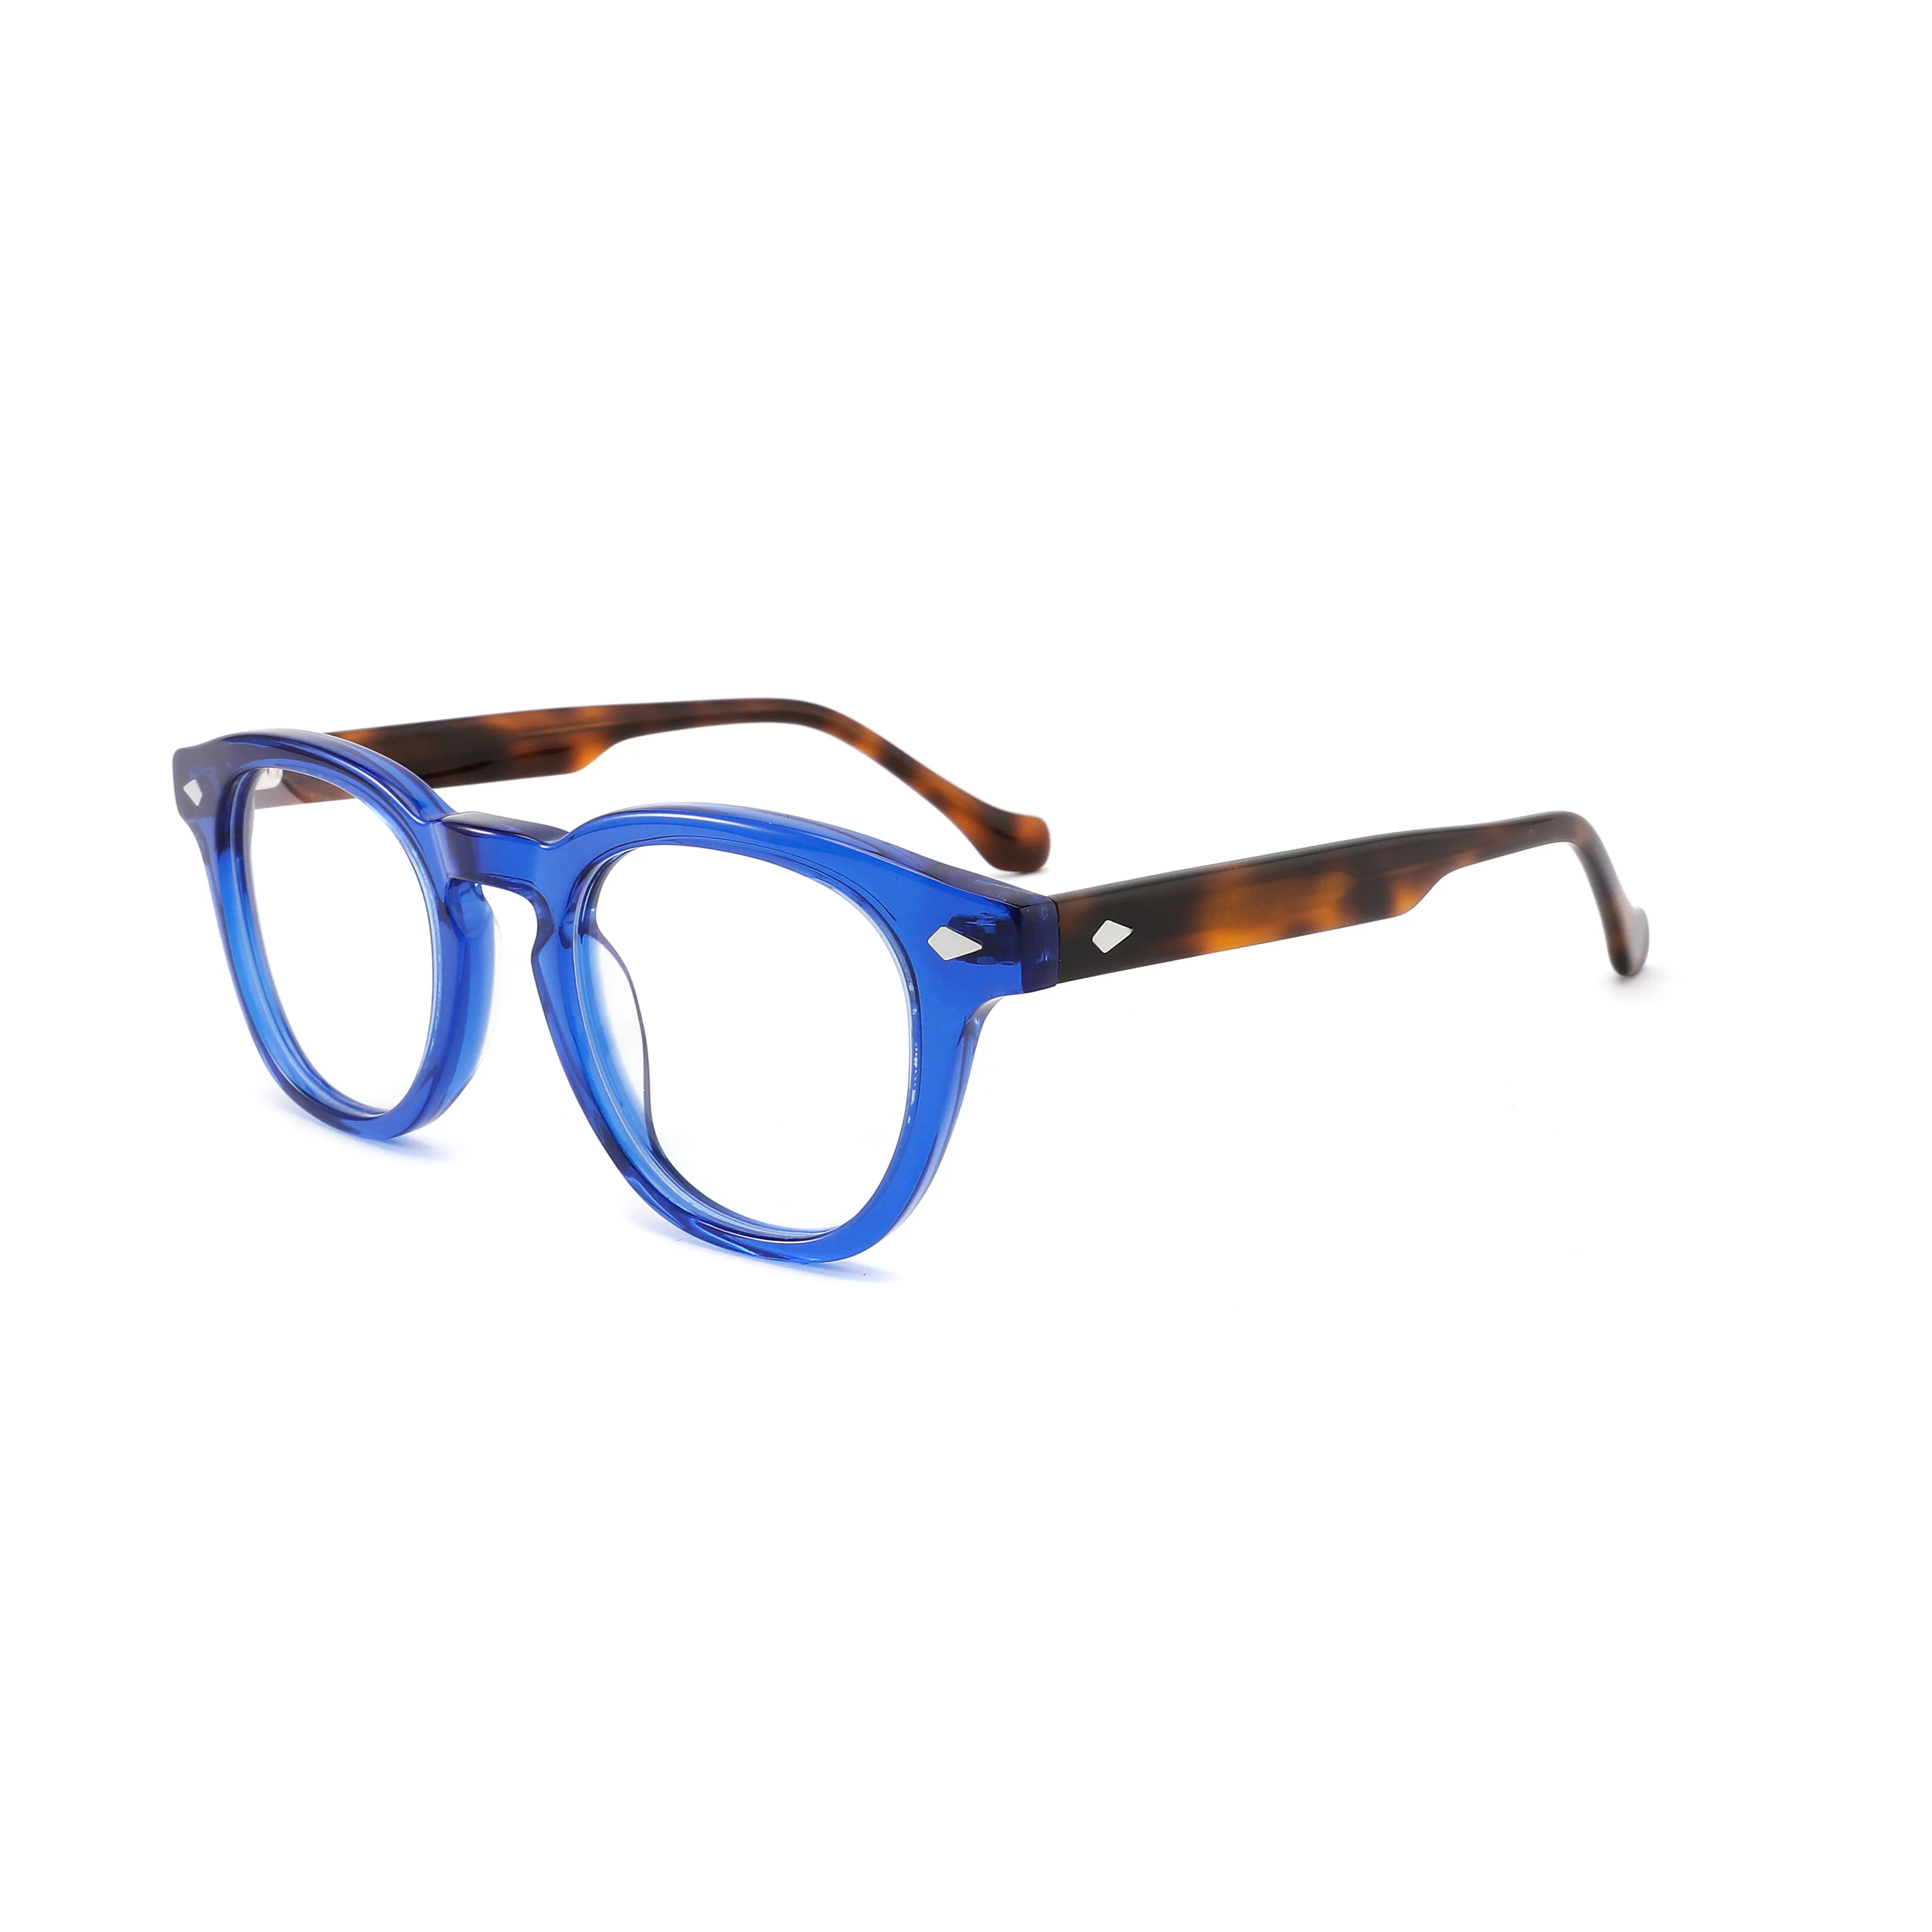 Alta qualidade óptica frames fabricantes clássicos vintage acetato Unisex boston glasses para Mulheres